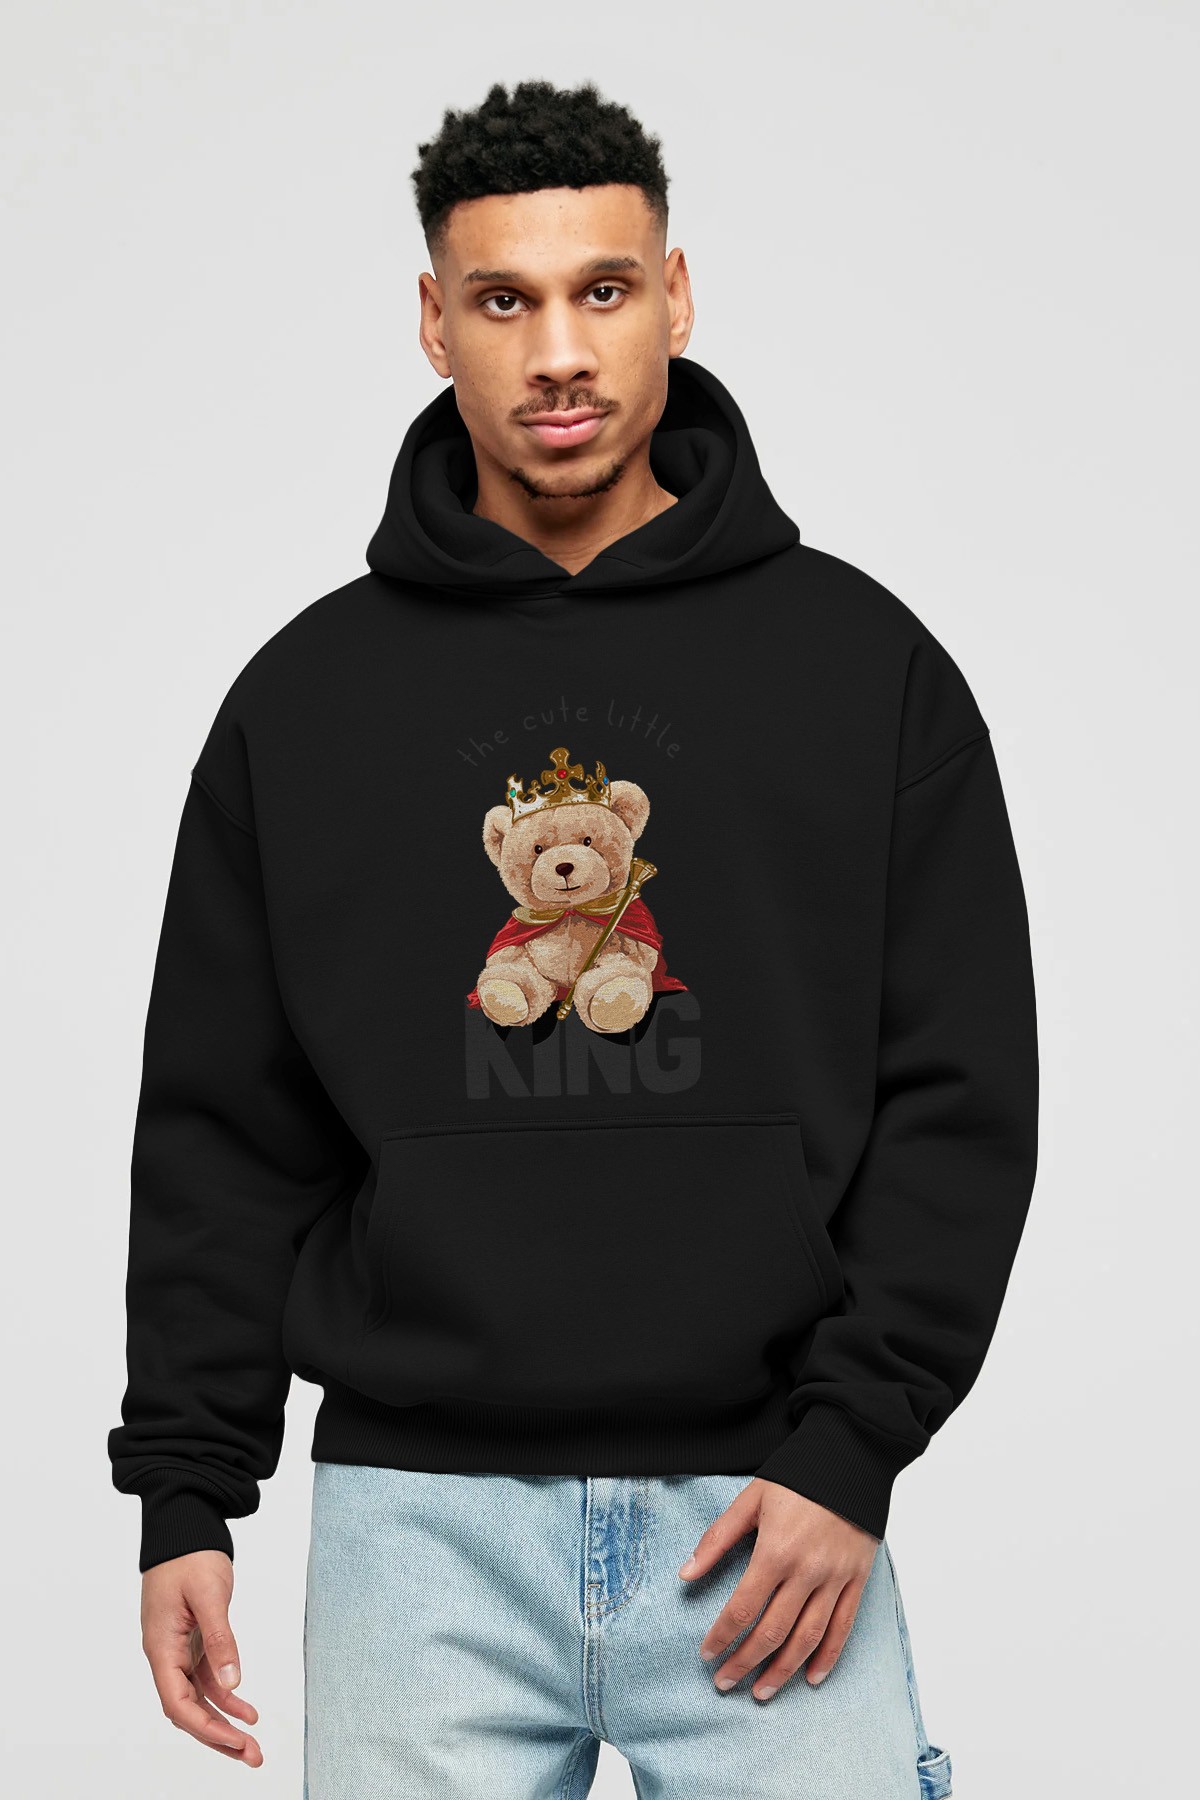 Teddy Bear King Ön Baskılı Hoodie Oversize Kapüşonlu Sweatshirt Erkek Kadın Unisex